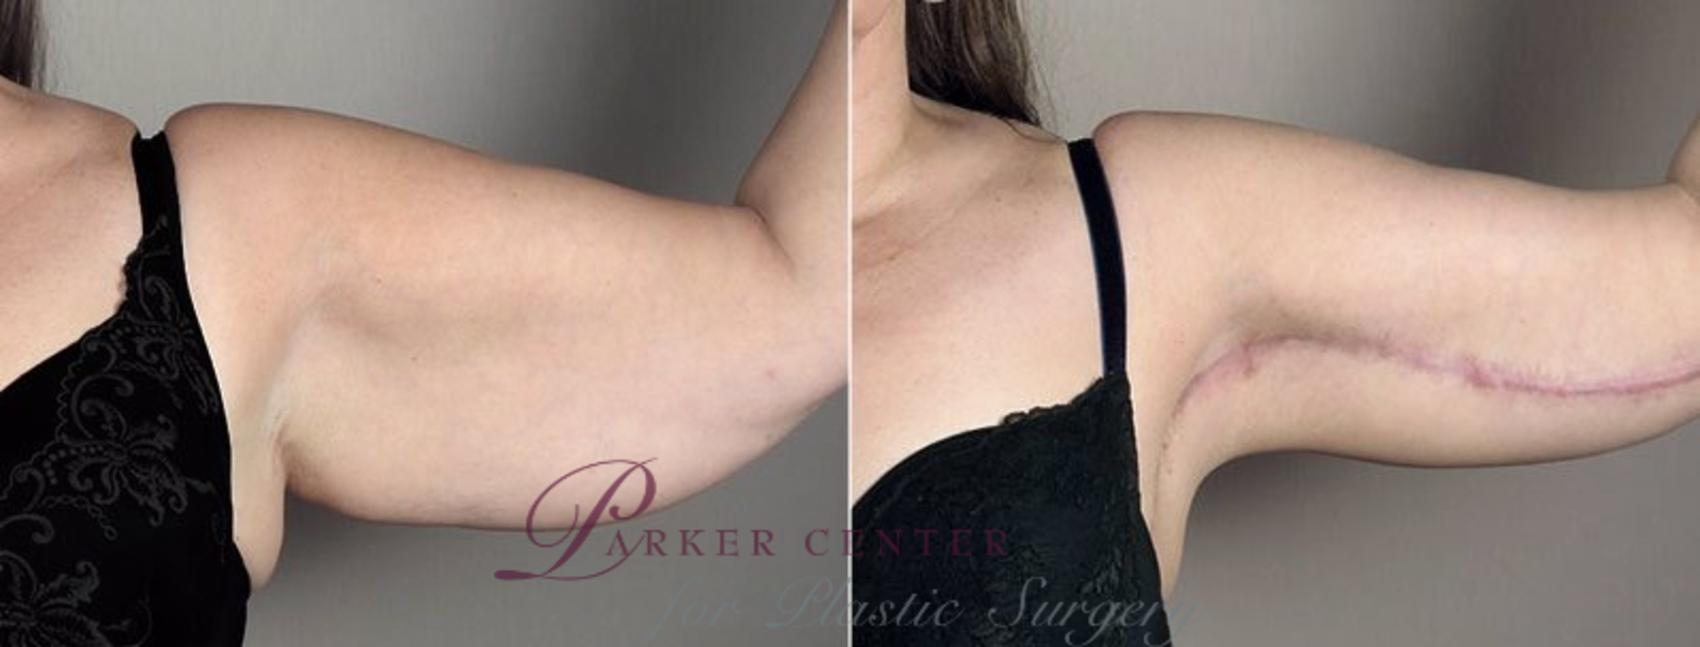 Upper Arm Rejuvenation Case 832 Before & After View #2 | Paramus, NJ | Parker Center for Plastic Surgery